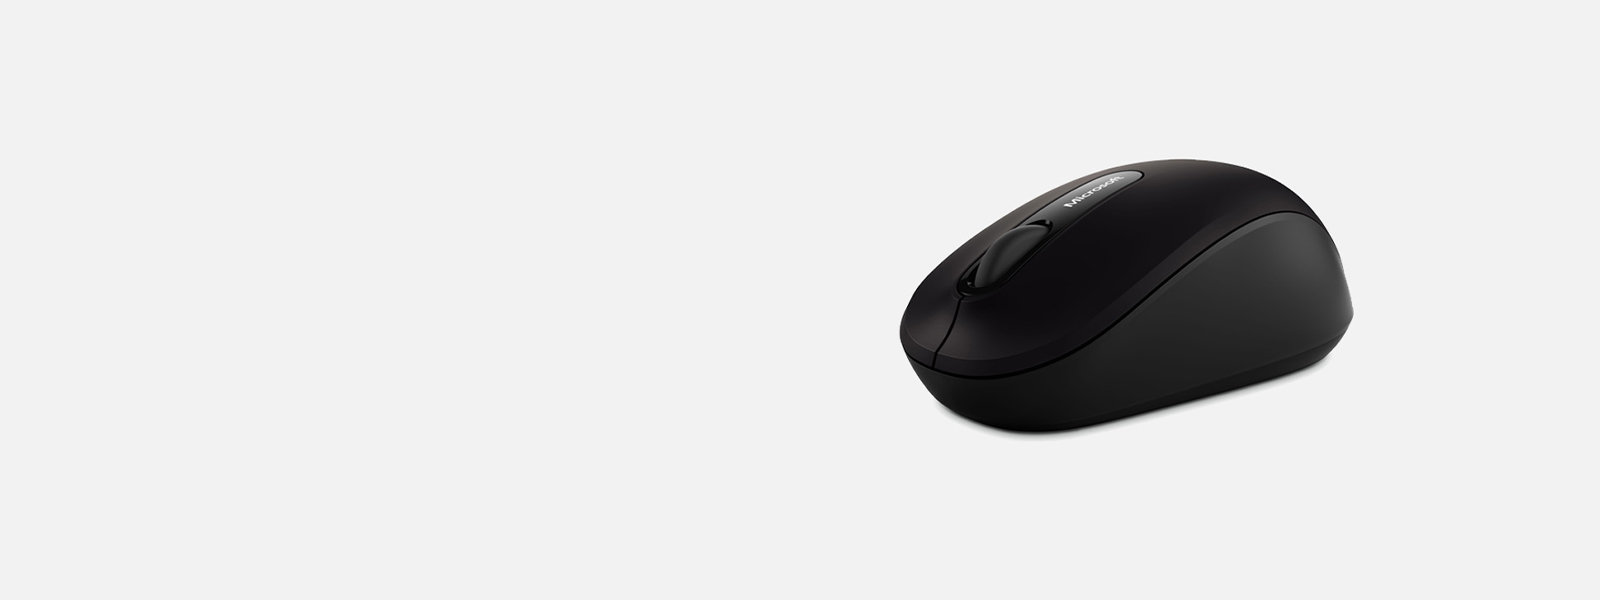 La souris sans fil ultracompacte Microsoft Mouse 3600 chute de prix